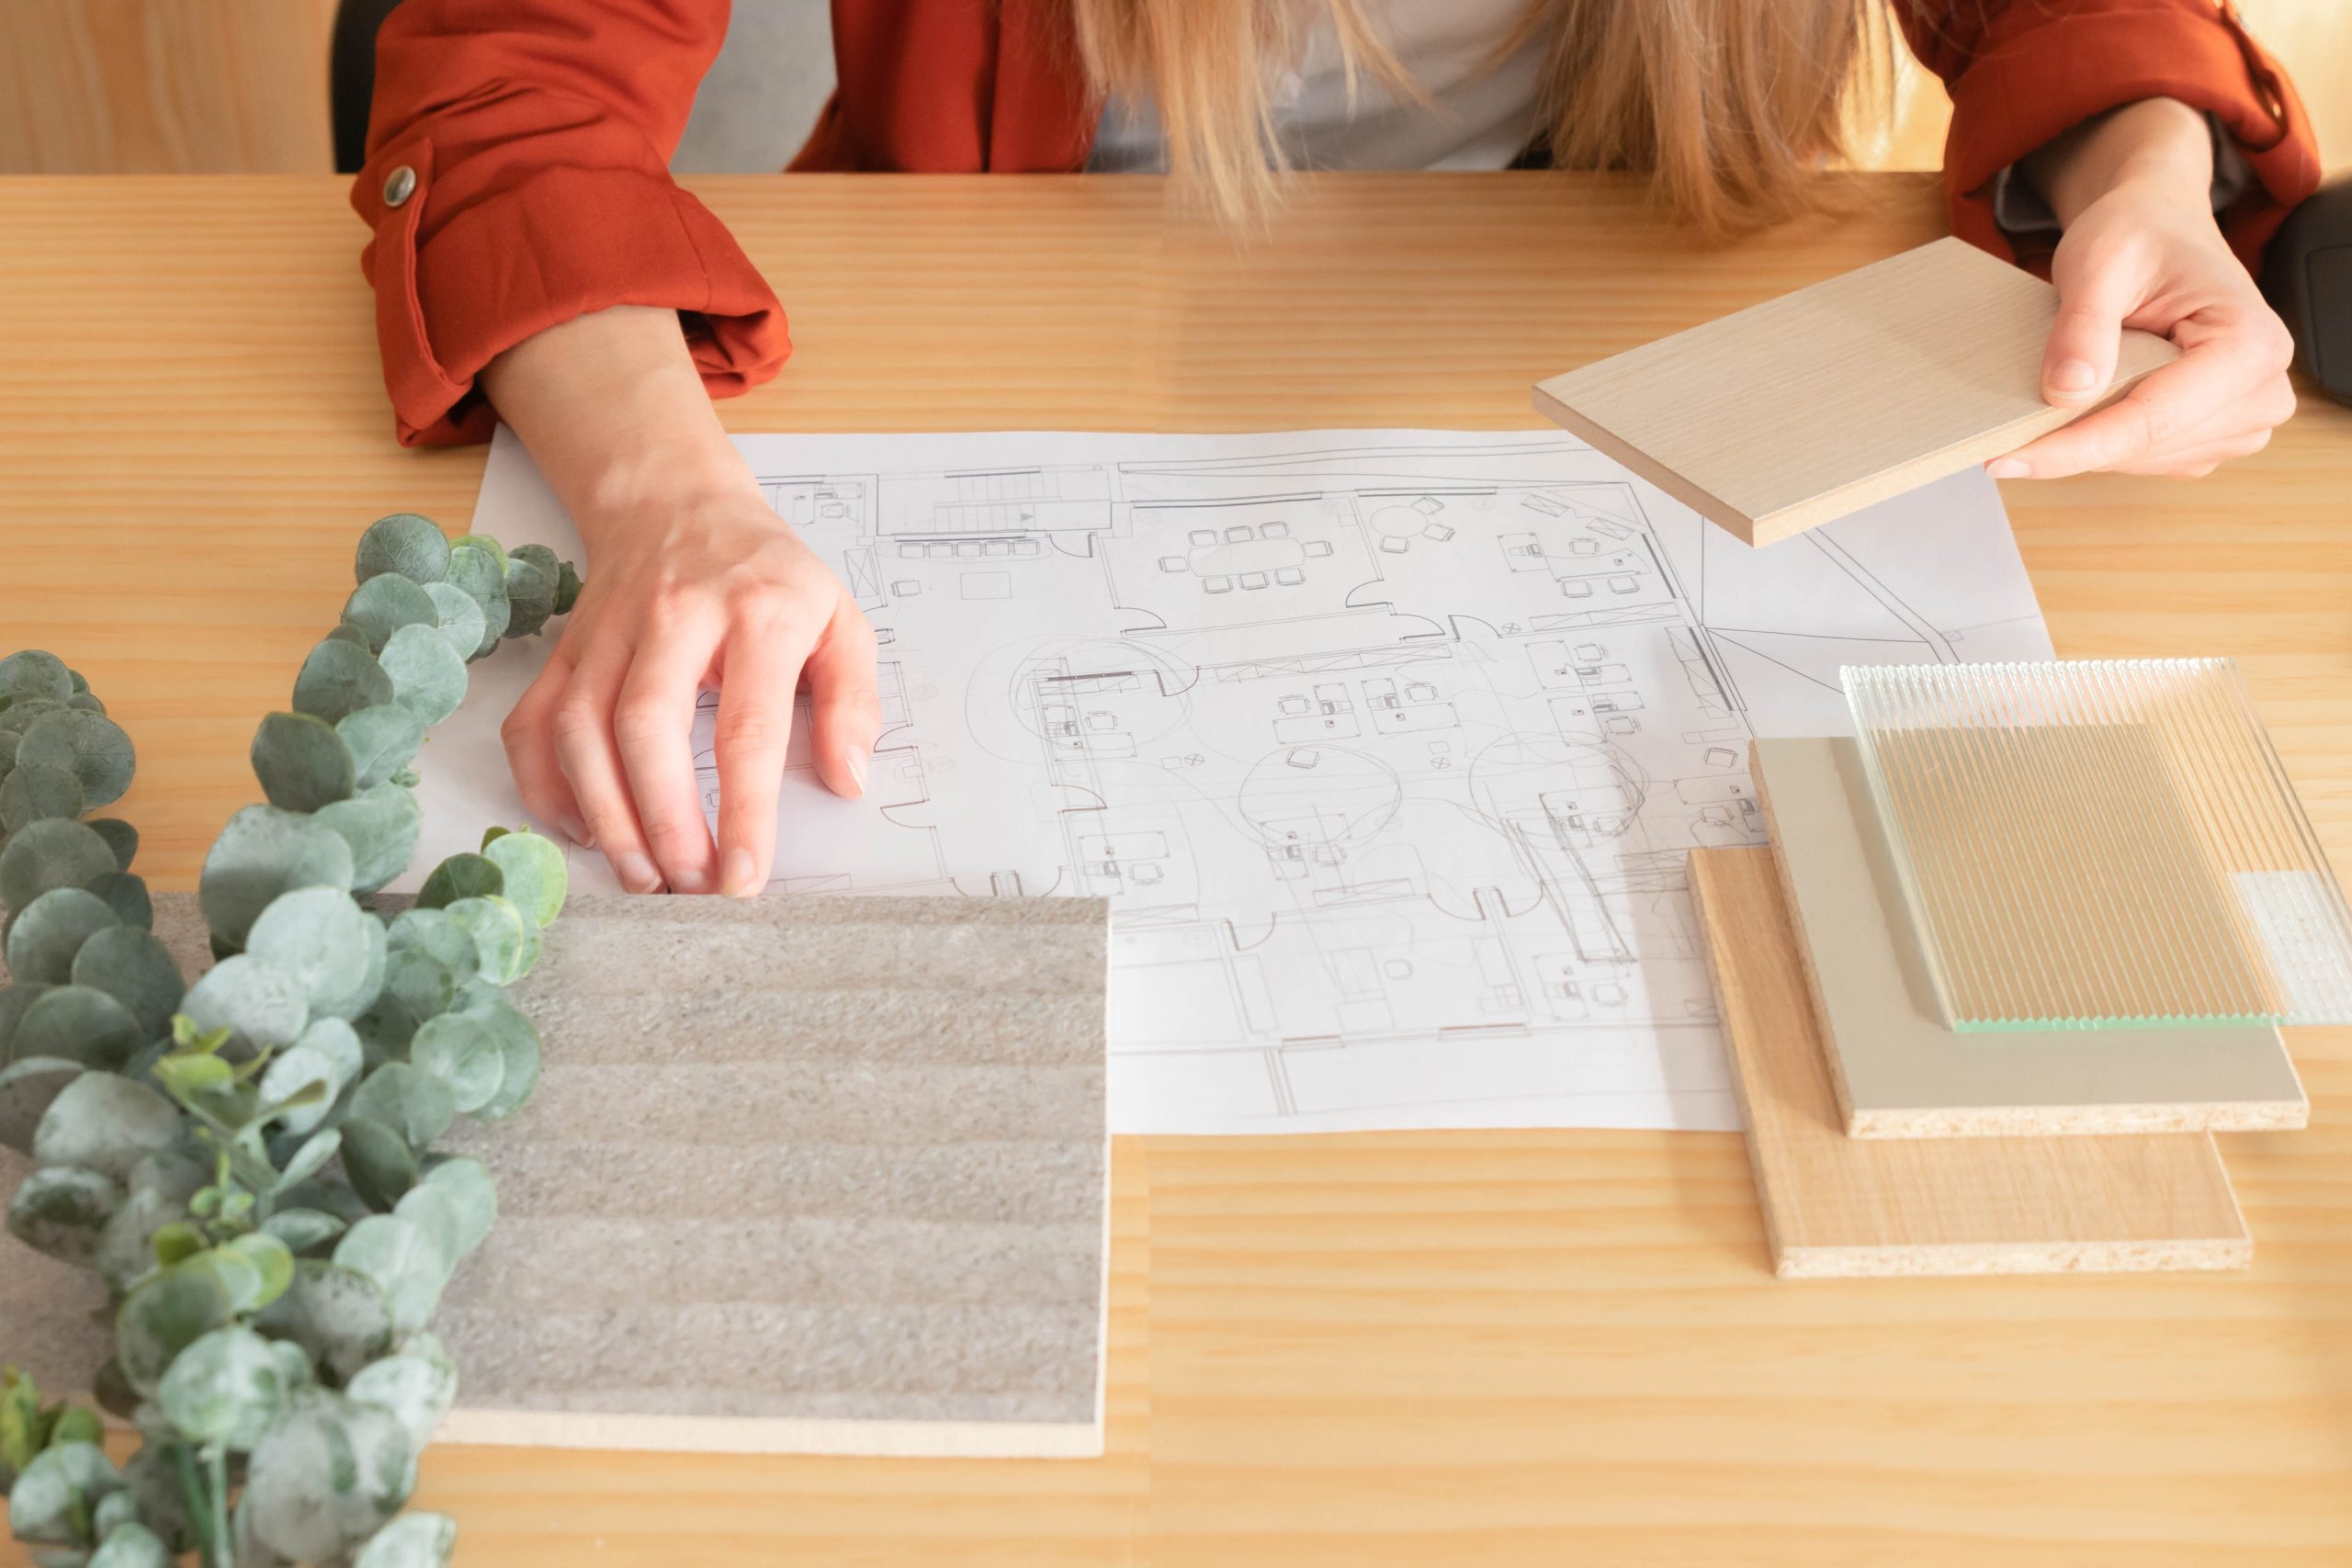 Innenarchitektur mit Materialmustern und Pflanze auf einem Tisch, während eine Person mit einem Holzmuster arbeitet.